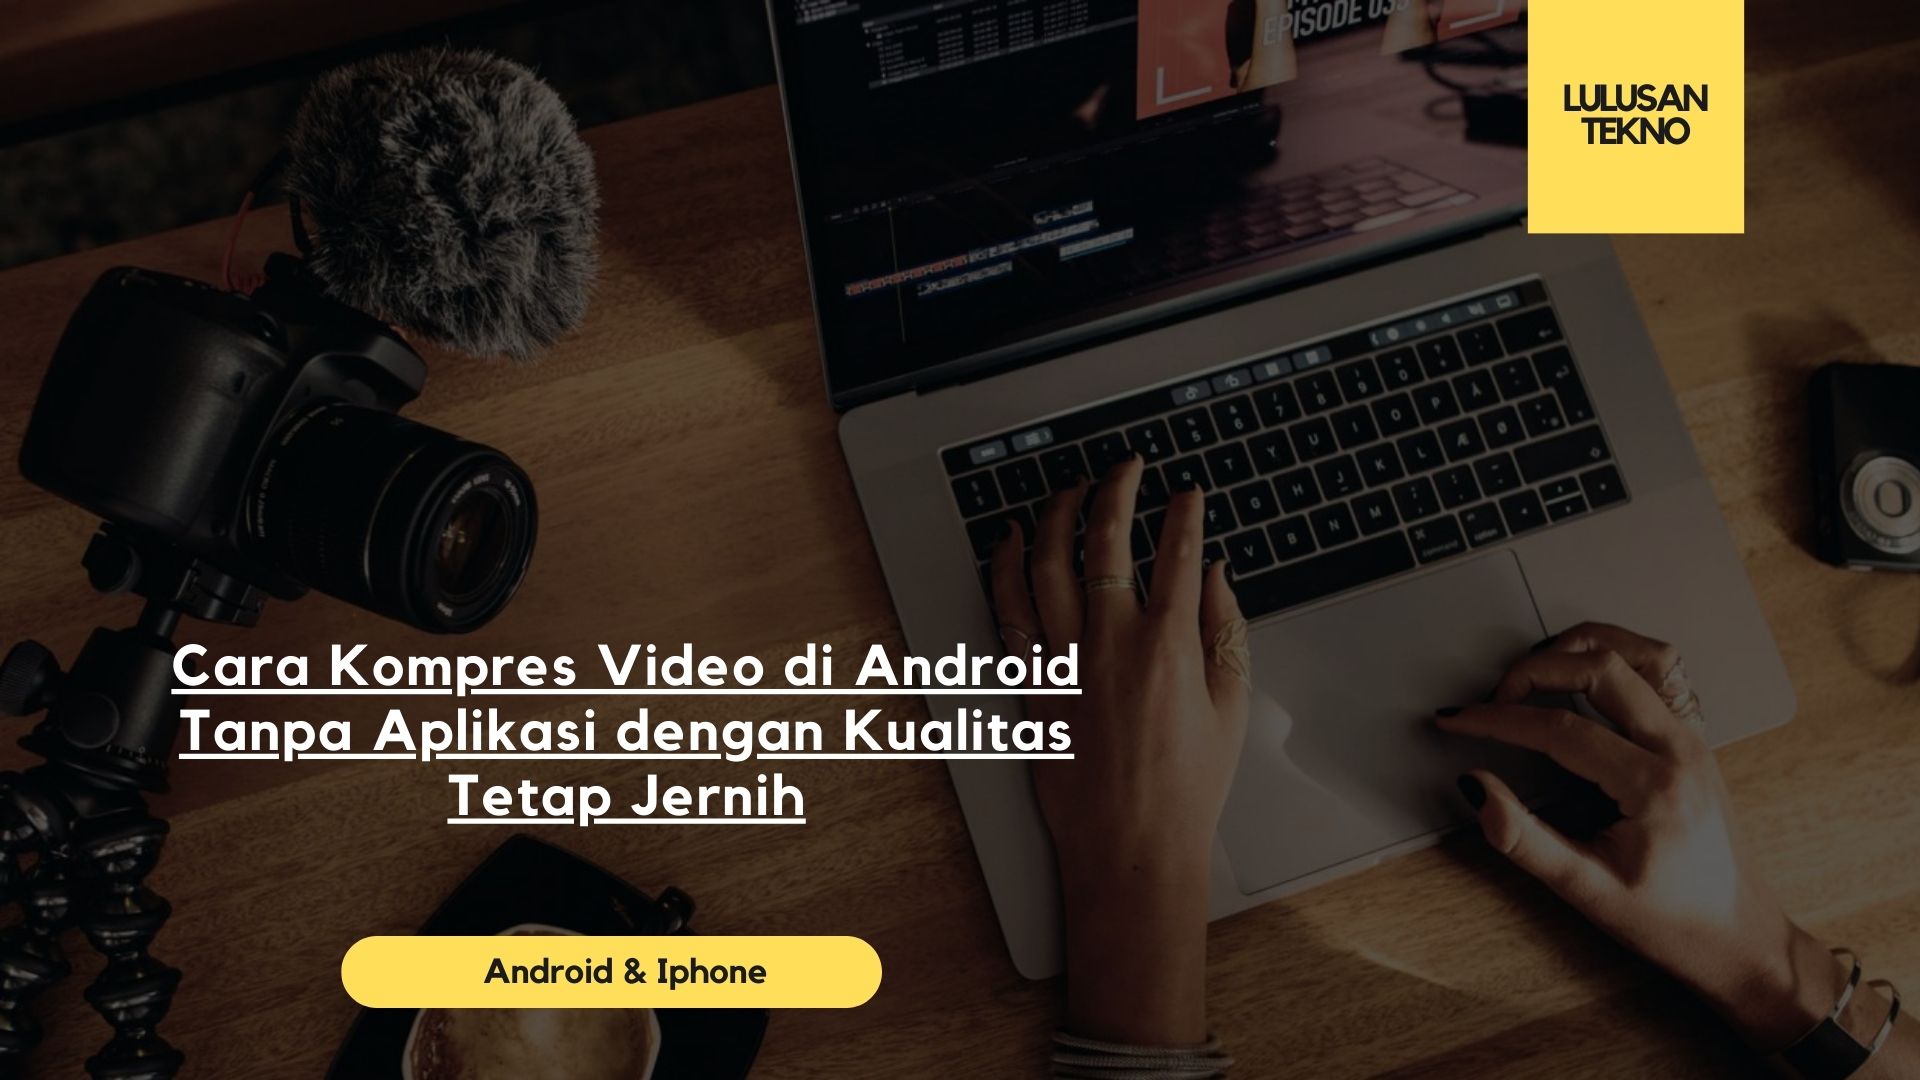 Cara Kompres Video di Android Tanpa Aplikasi dengan Kualitas Tetap Jernih